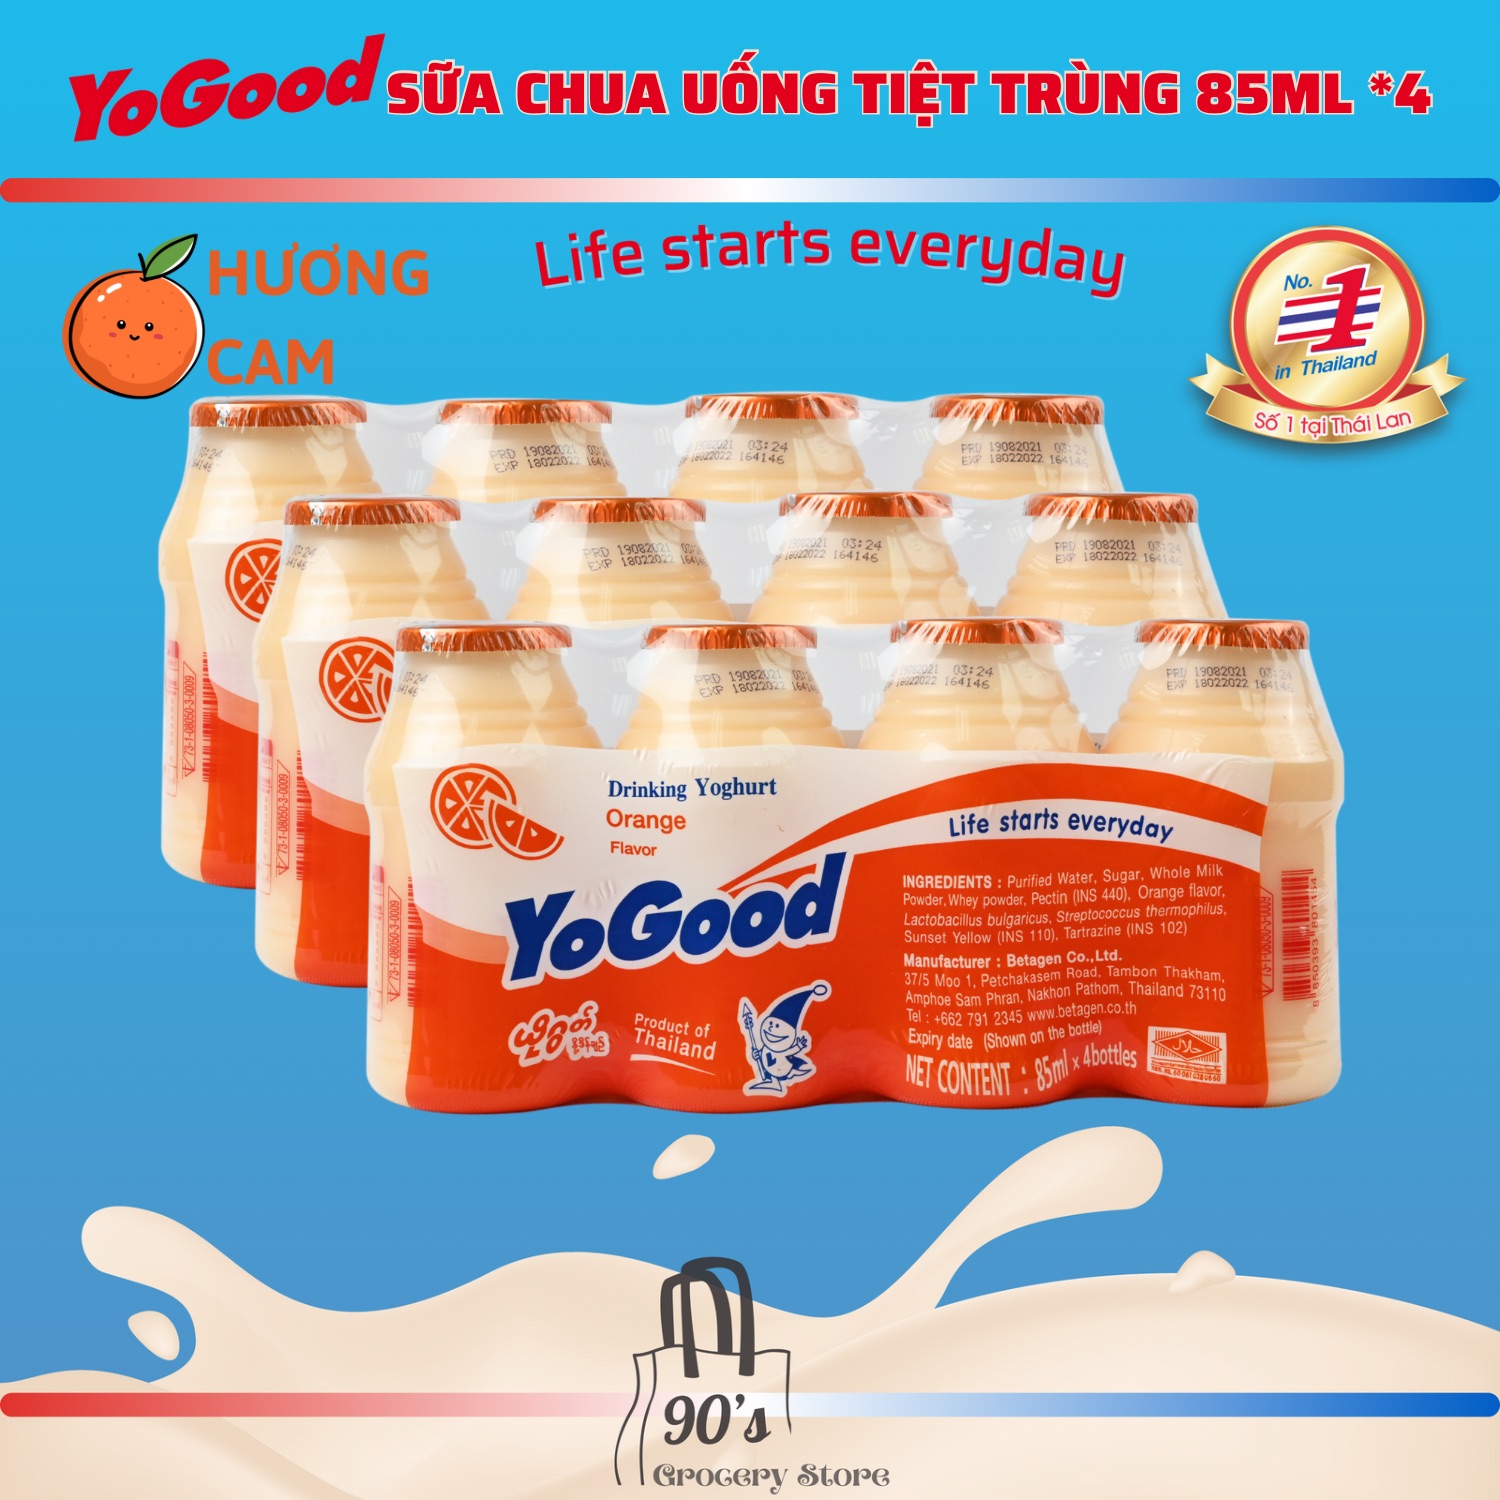 90 s Grocery Store SỮA CHUA UỐNG TIỆT TRÙNG YOGOOD 85ML 4 CAM